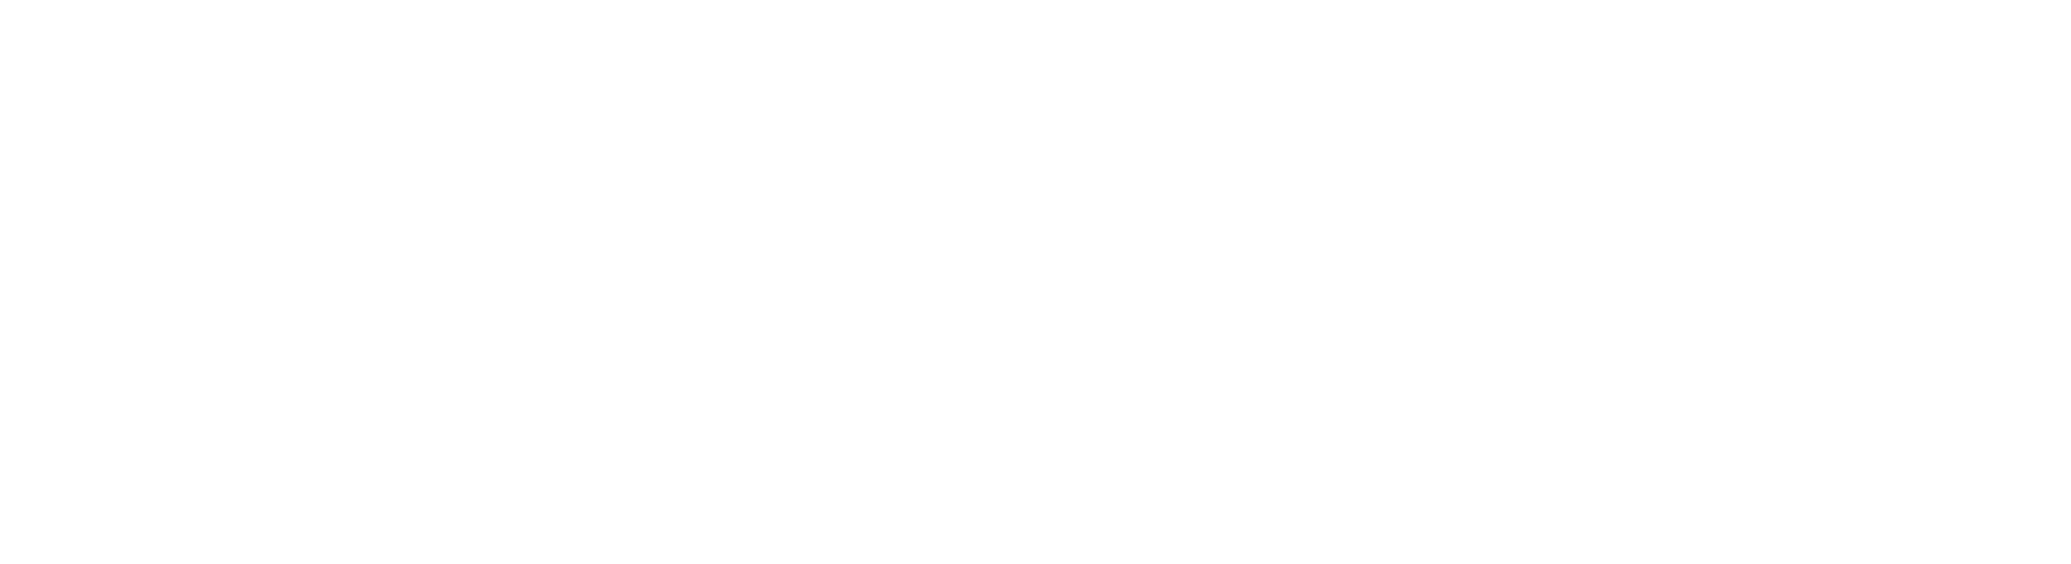 Paradigme stratégies